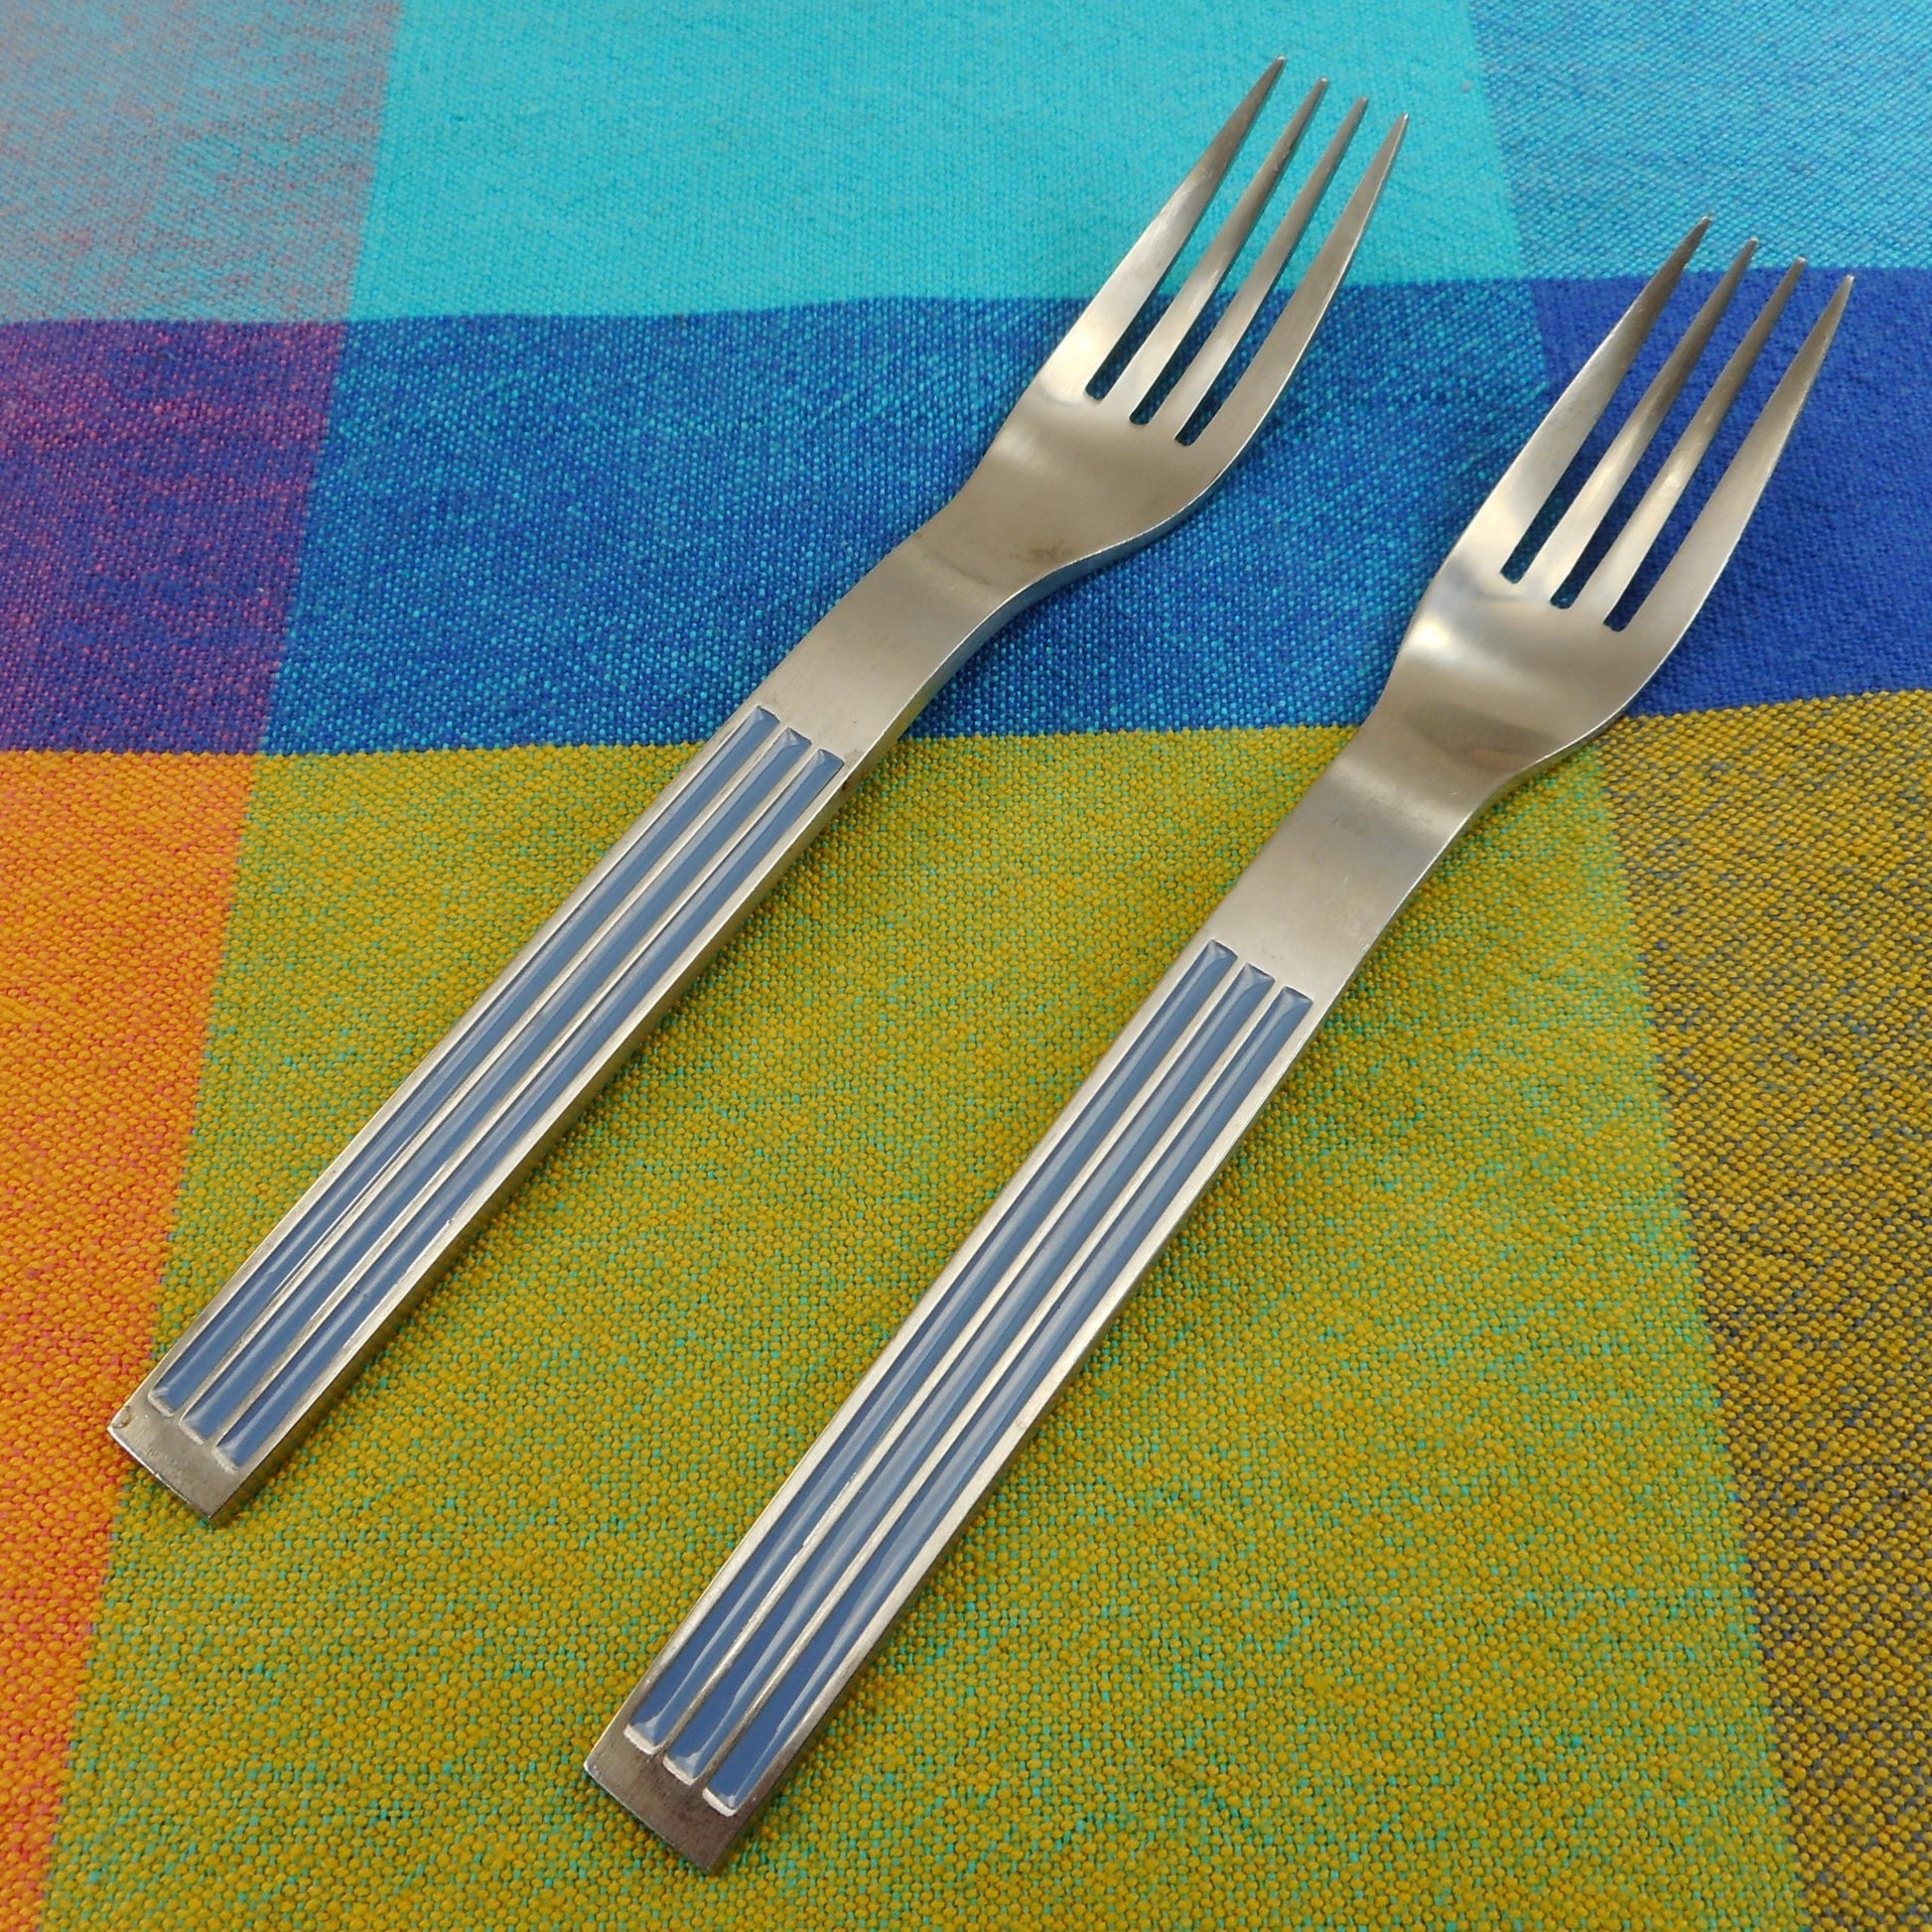 Dansk Japan Thebe Blue Stainless Flatware - 2 Salad Forks